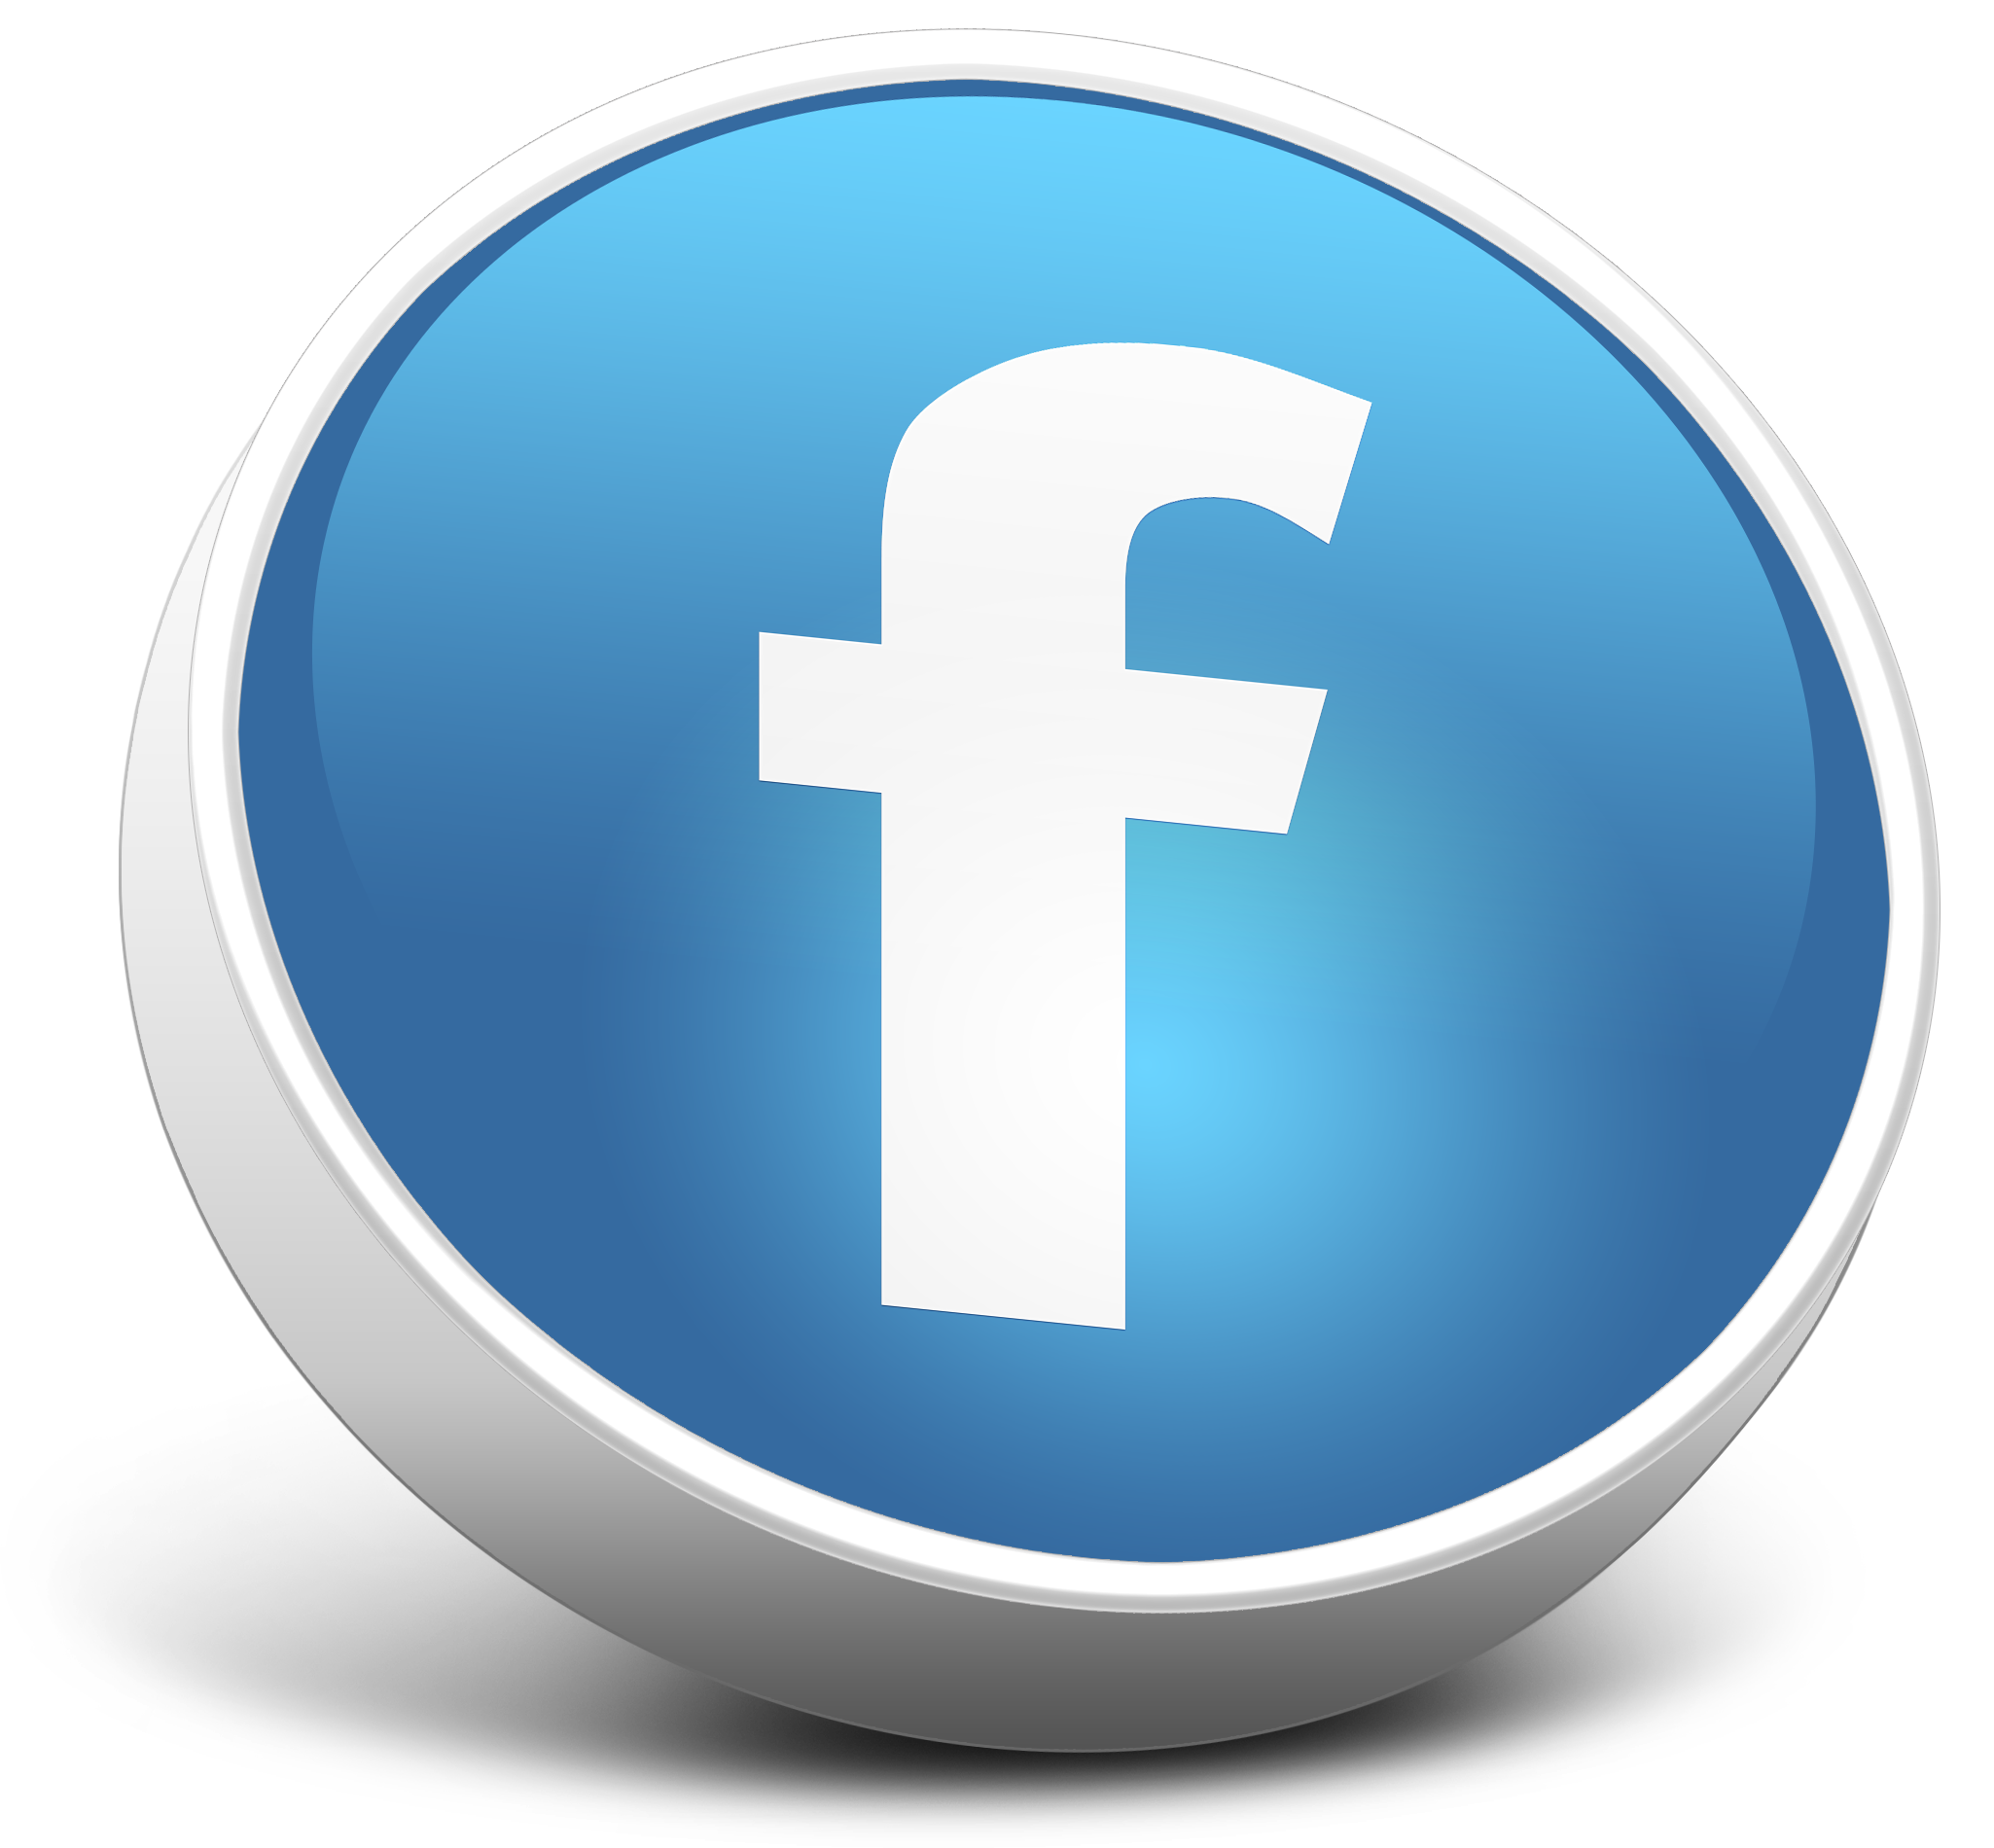 facebook hd video downloader online